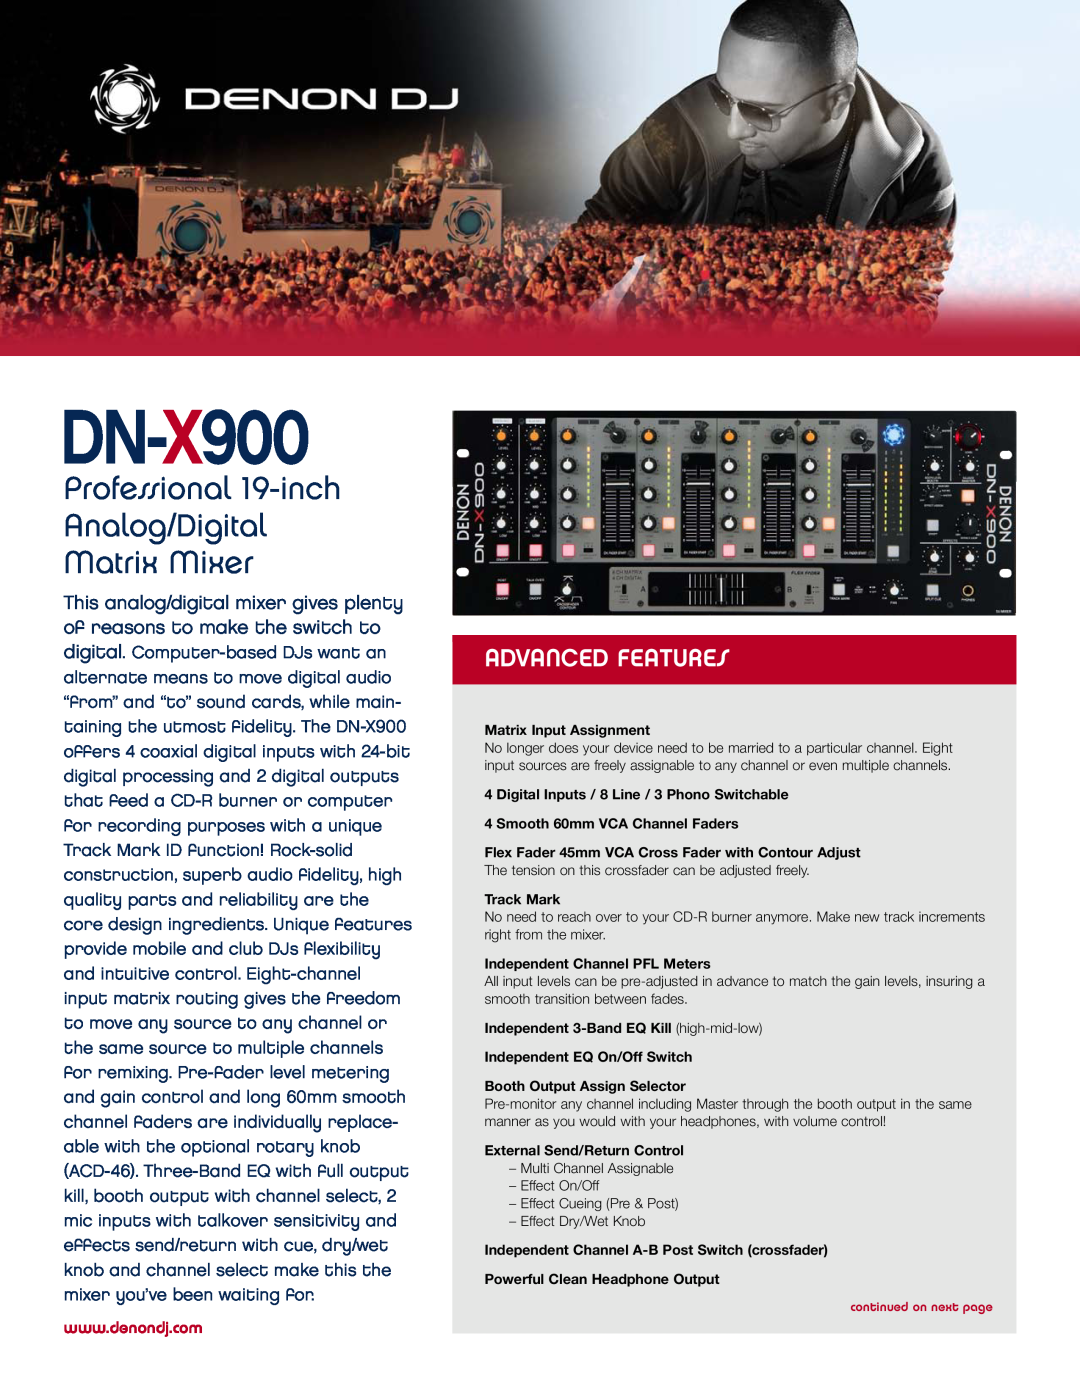 Denon DJ DN-X900 manual Professional 19-inch Analog/Digital Matrix Mixer, Advanced Features 